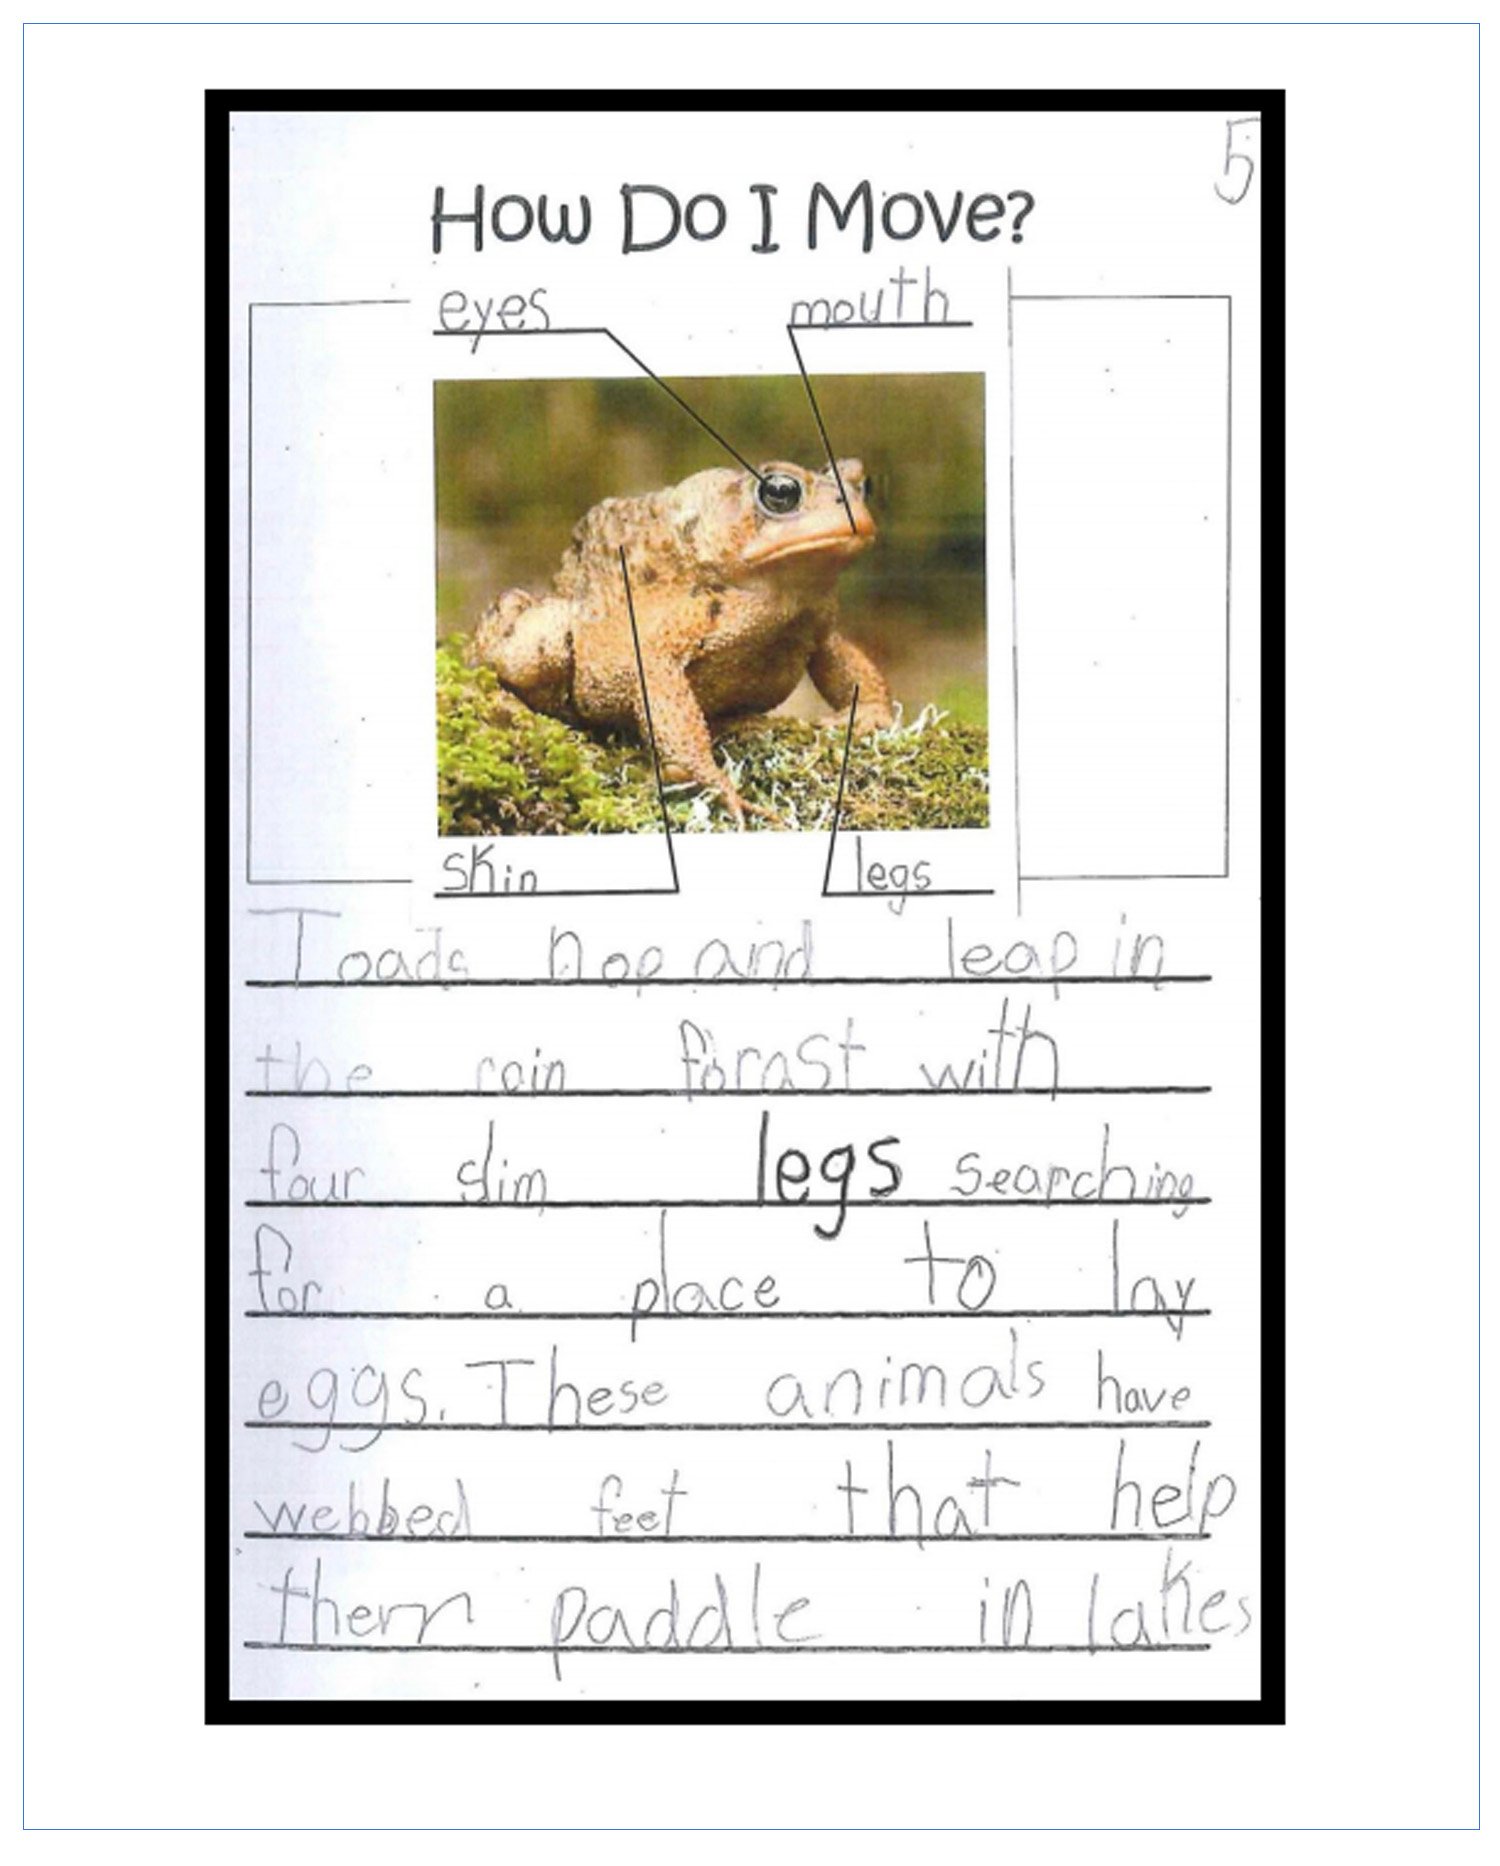 Frog.Sample Image